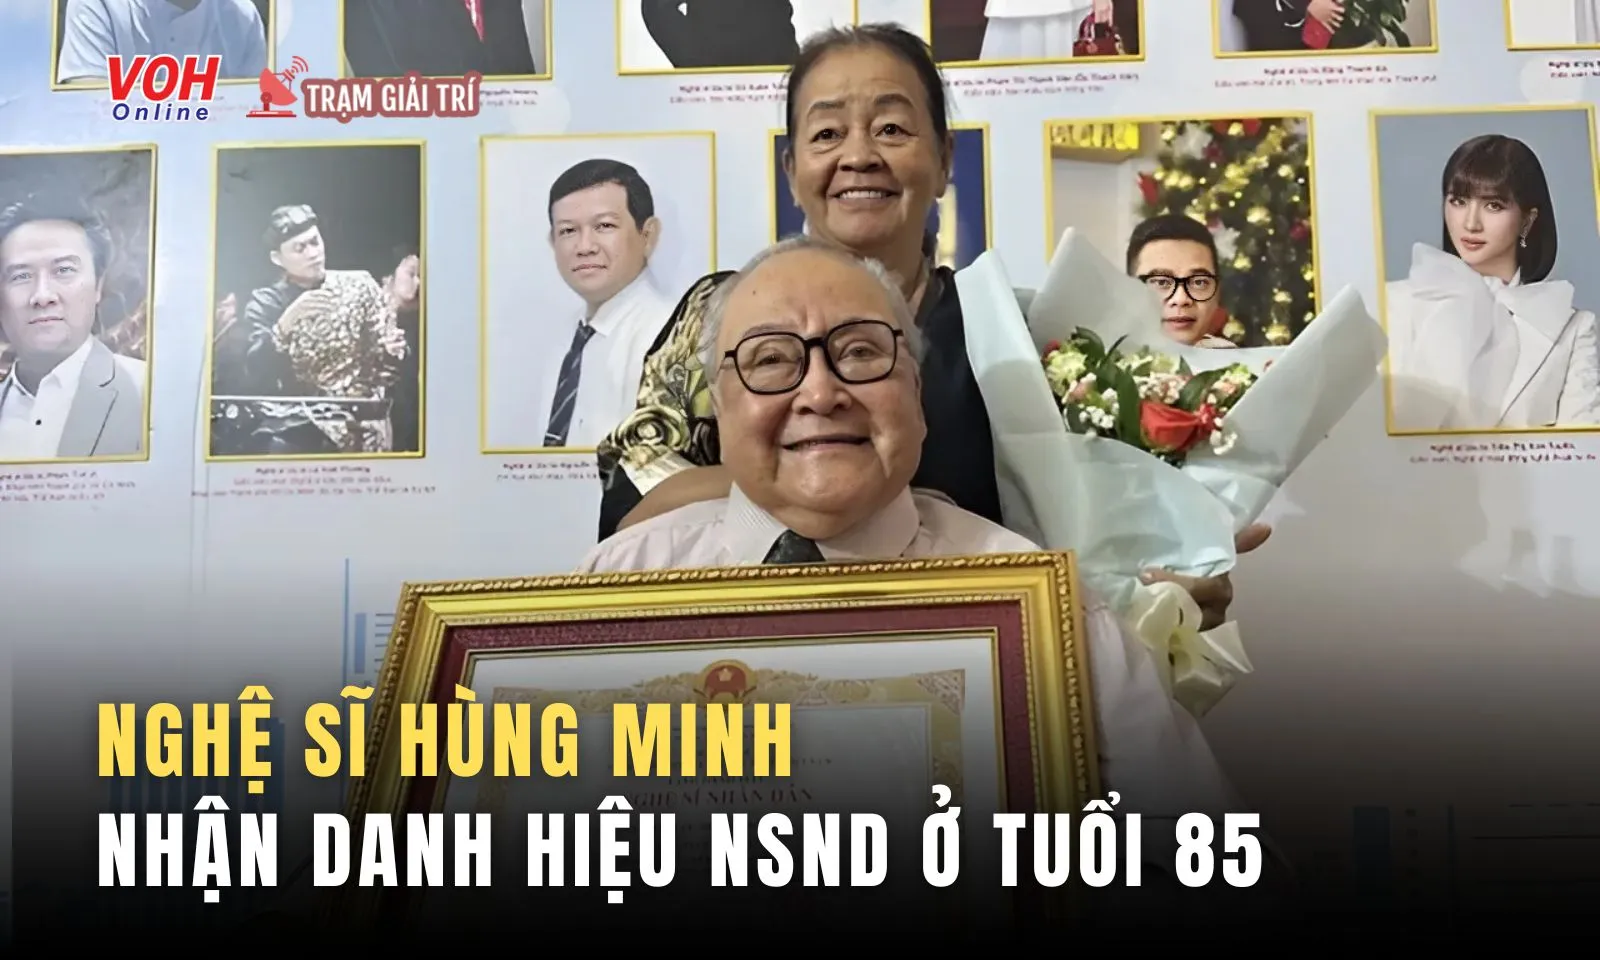 Xúc động nghệ sĩ cải lương Hùng Minh nhận danh hiệu NSND ở tuổi 85 